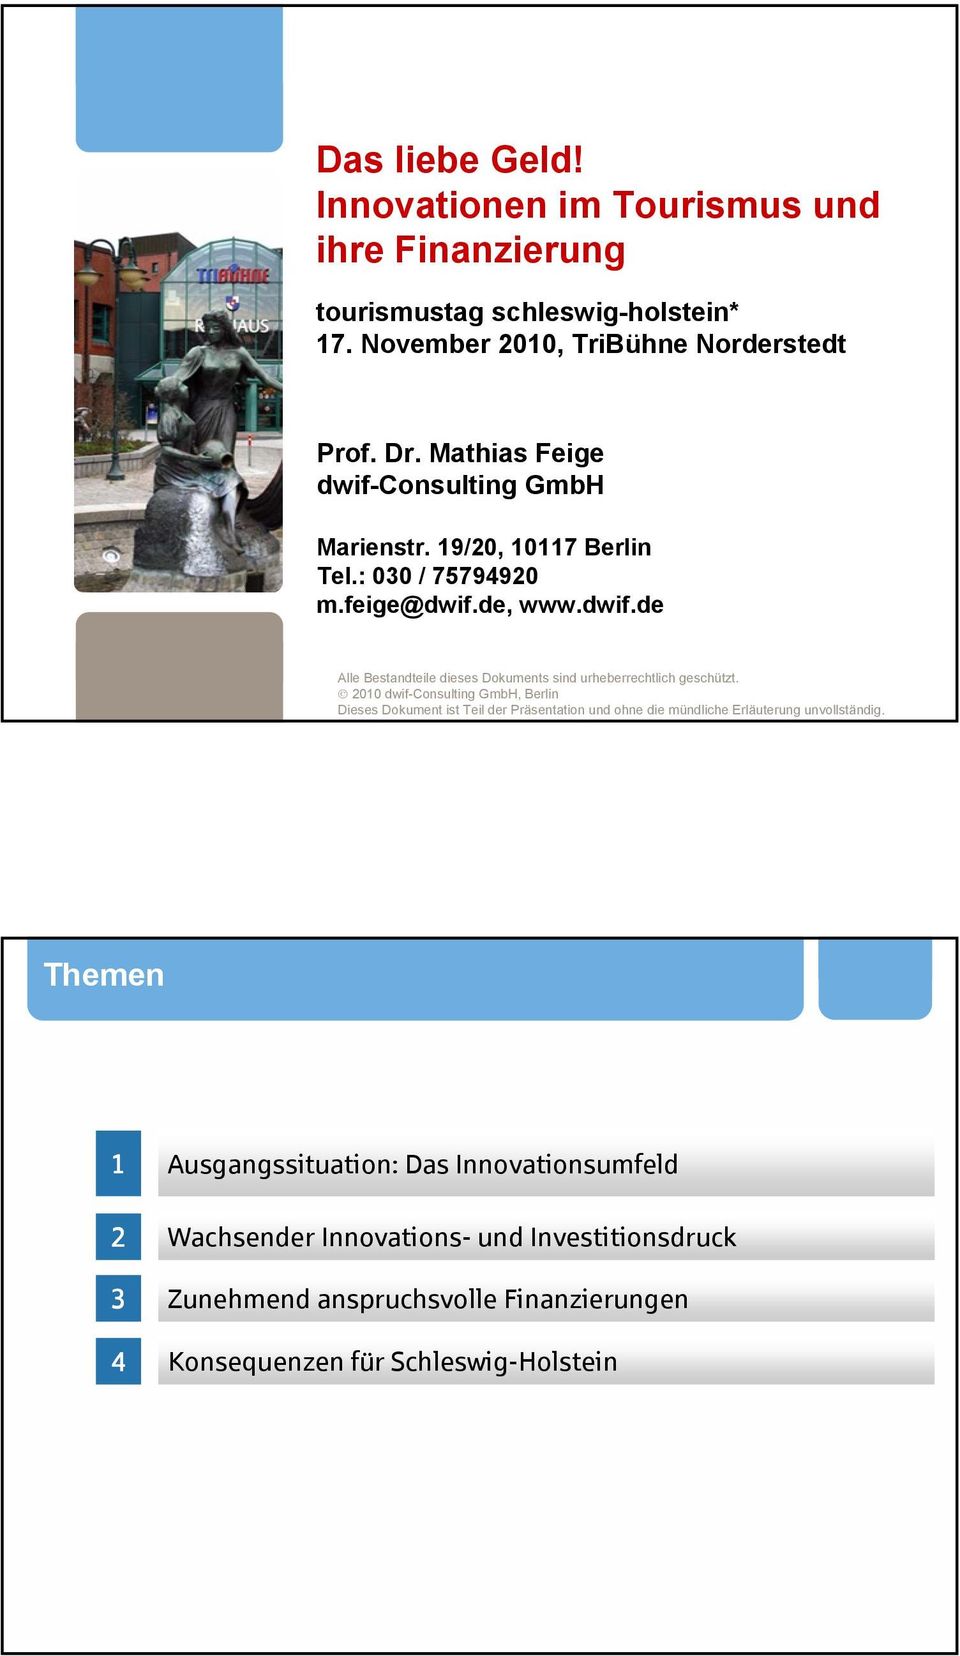 2010 dwif-consulting GmbH, Berlin Dieses Dokument ist Teil der Präsentation und ohne die mündliche Erläuterung unvollständig.